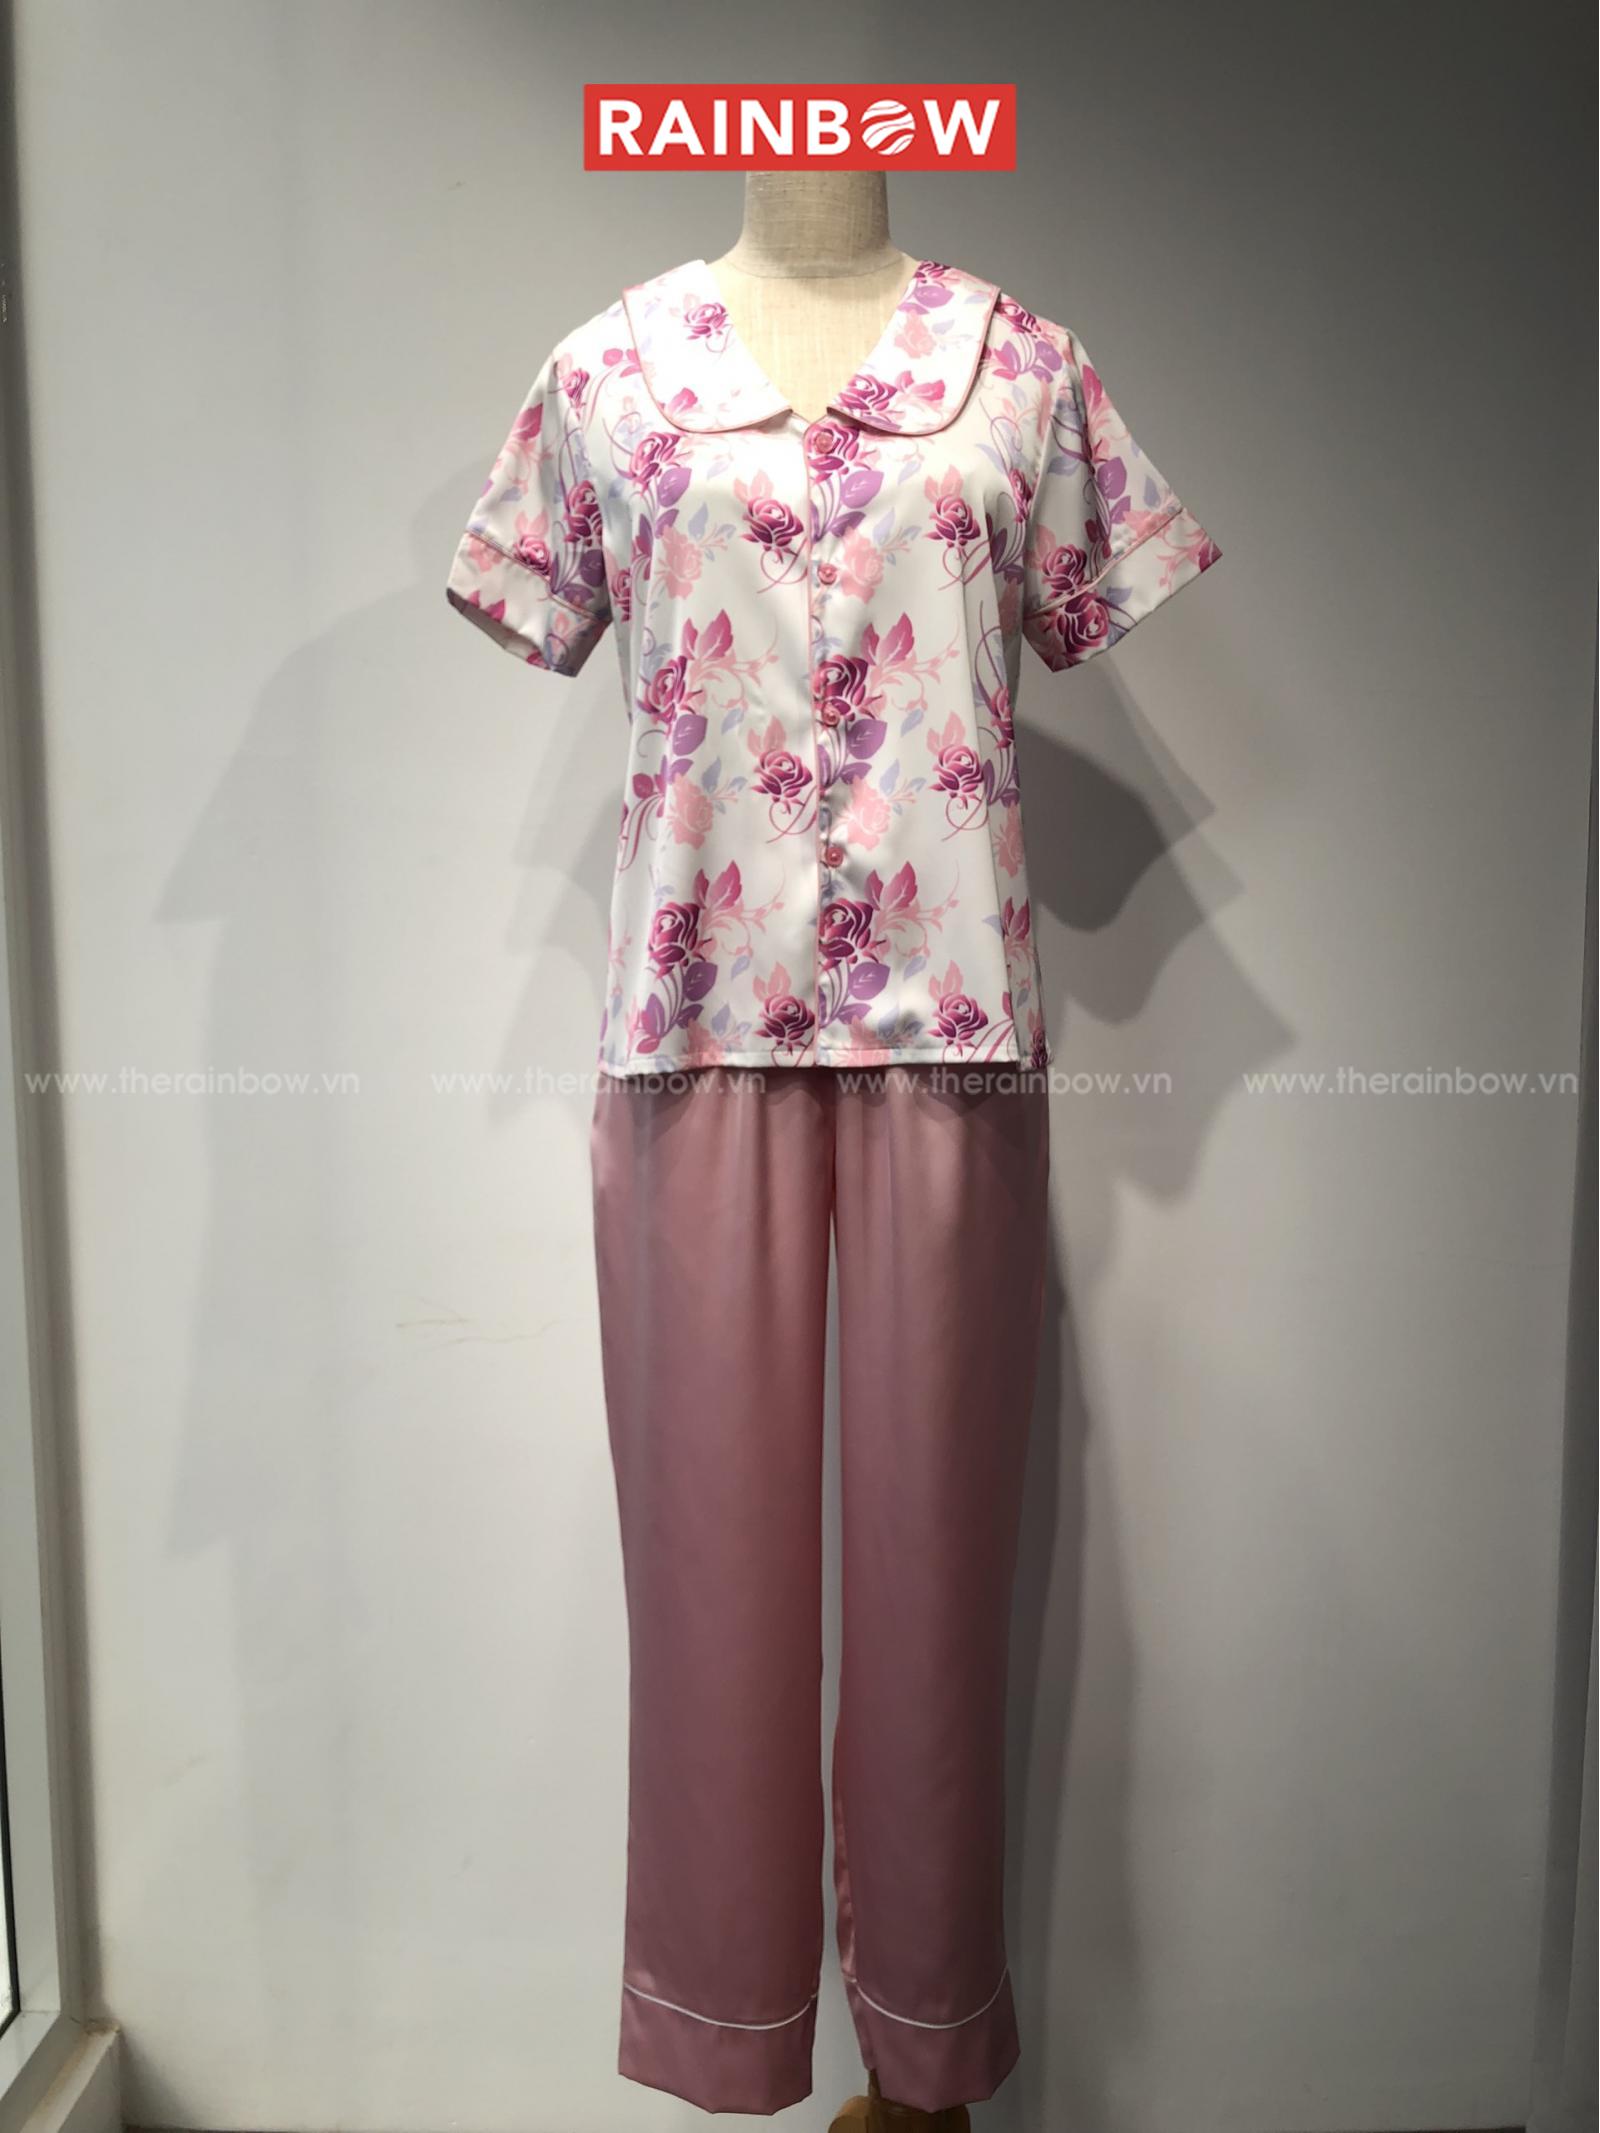 Pyjama tay ngắn + quần dài (phối màu hồng, tím)